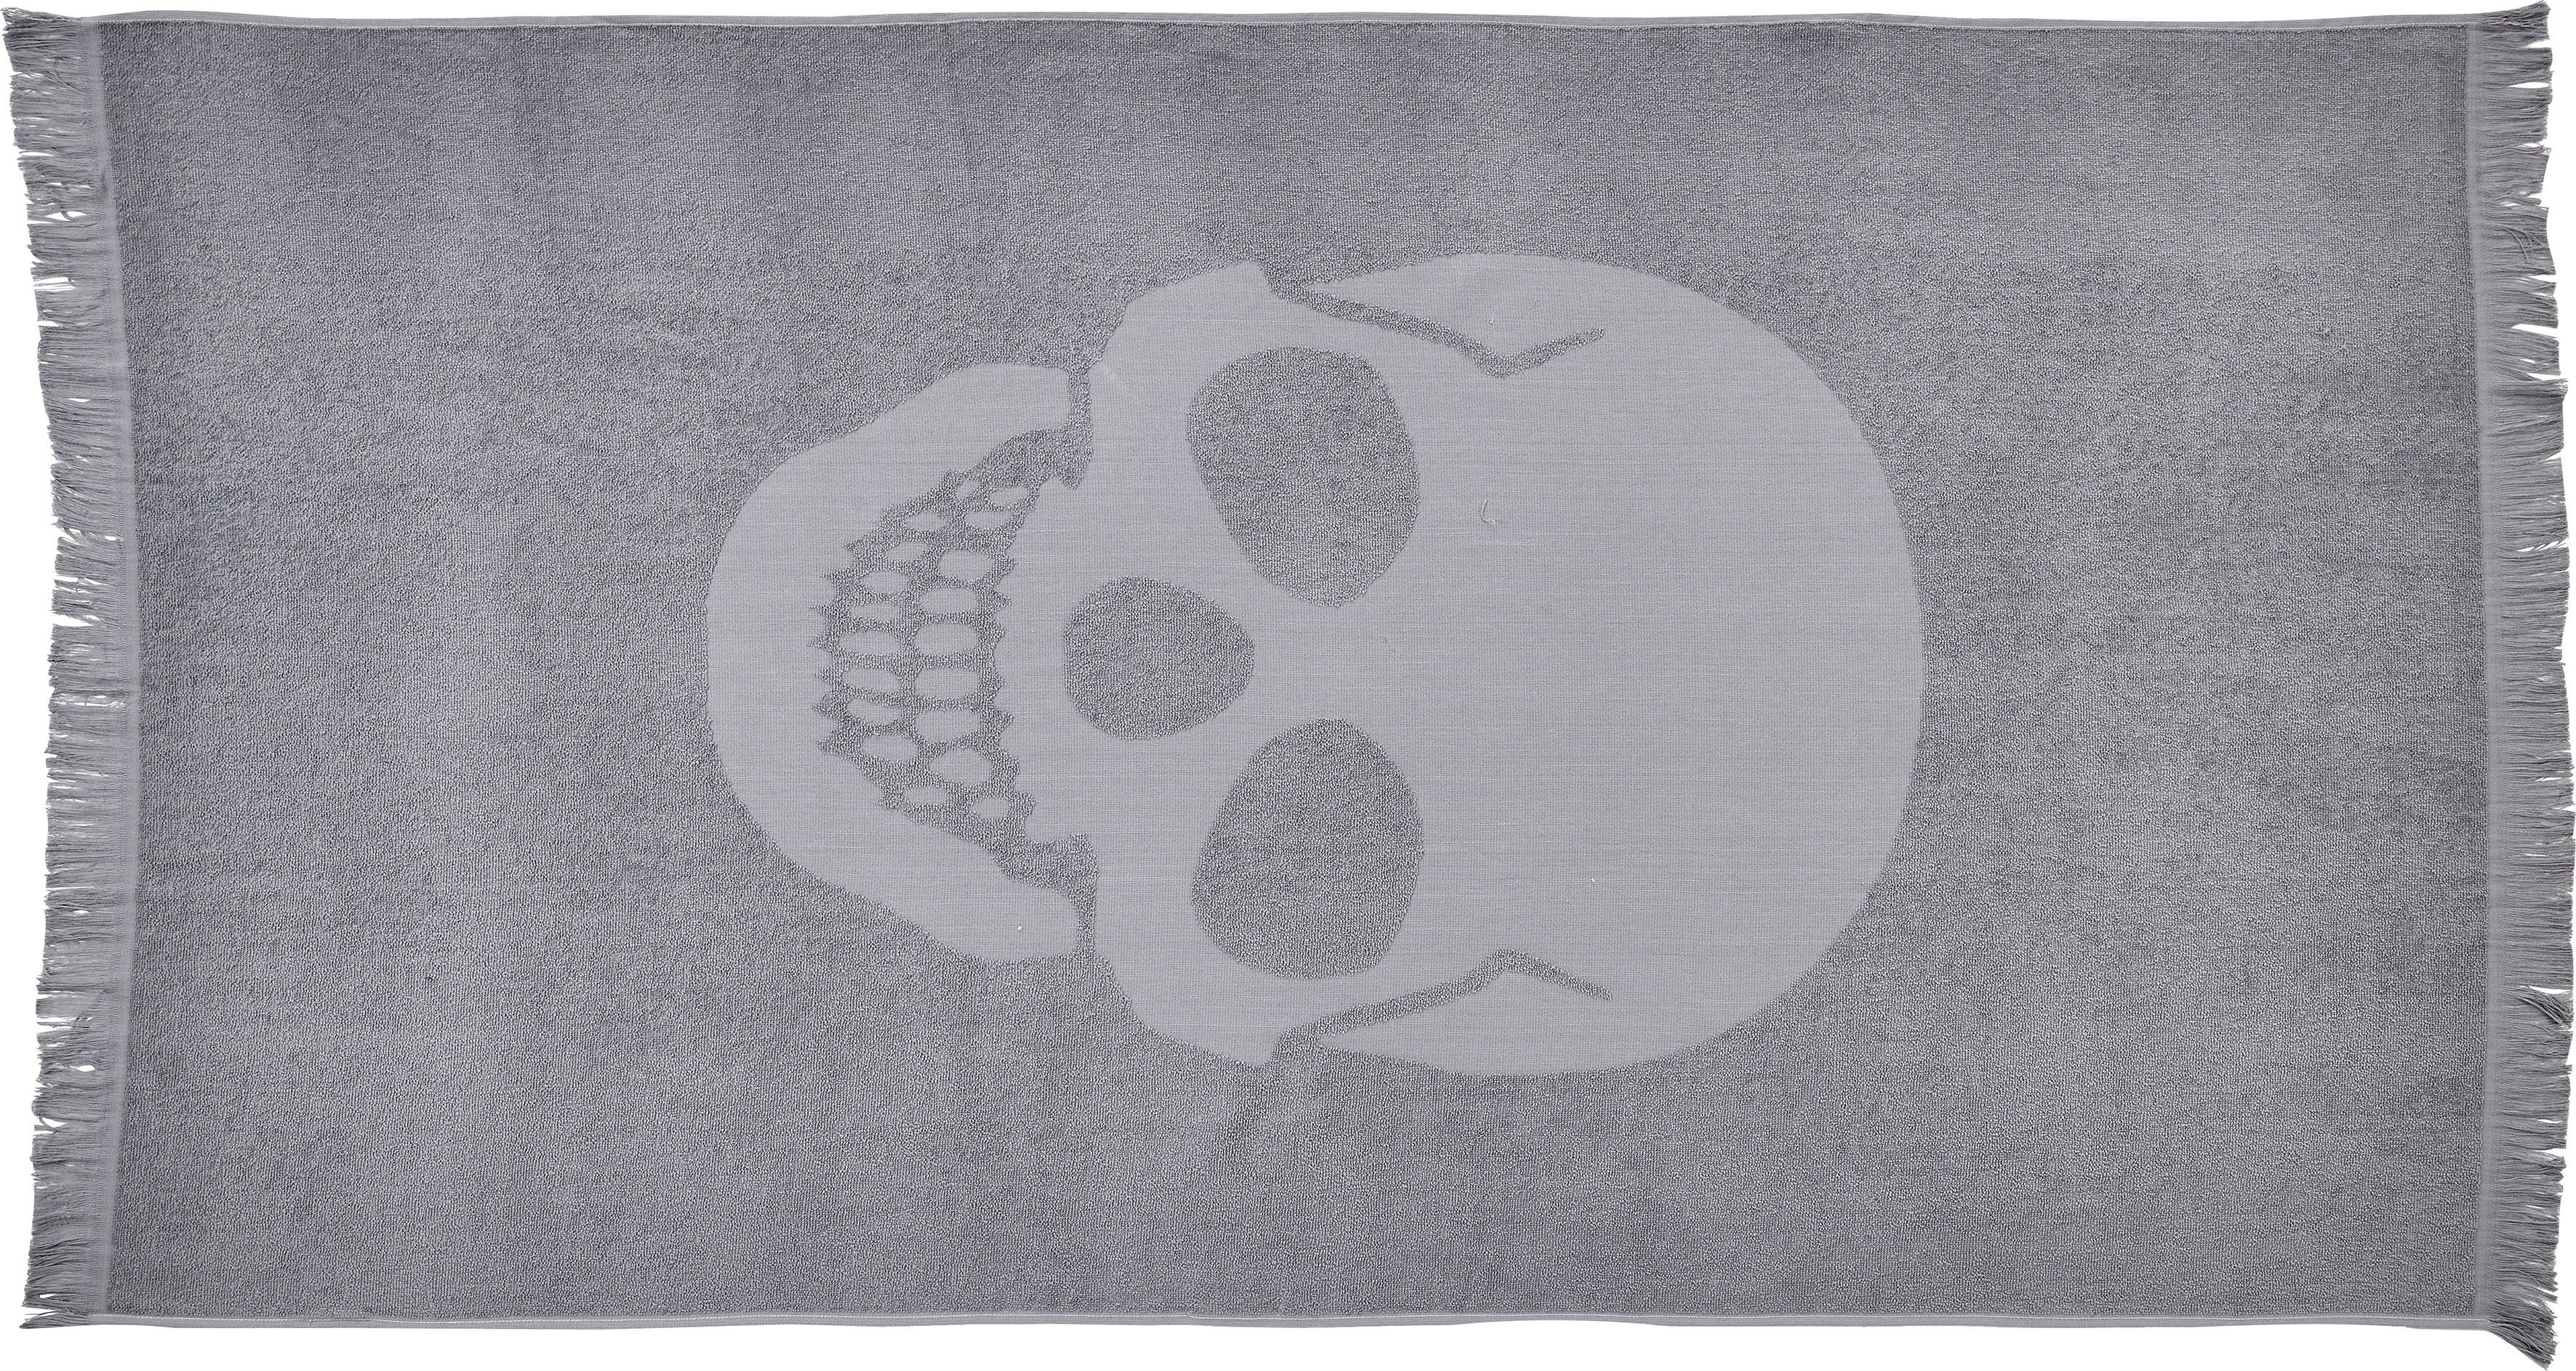 done.® Hamam-baddoeken Skull 90x160 cm, zachte & absorberende badstof binnenkant, unikleurig, met doodskopmotief & franje, ideaal als strandlaken (1 stuk)